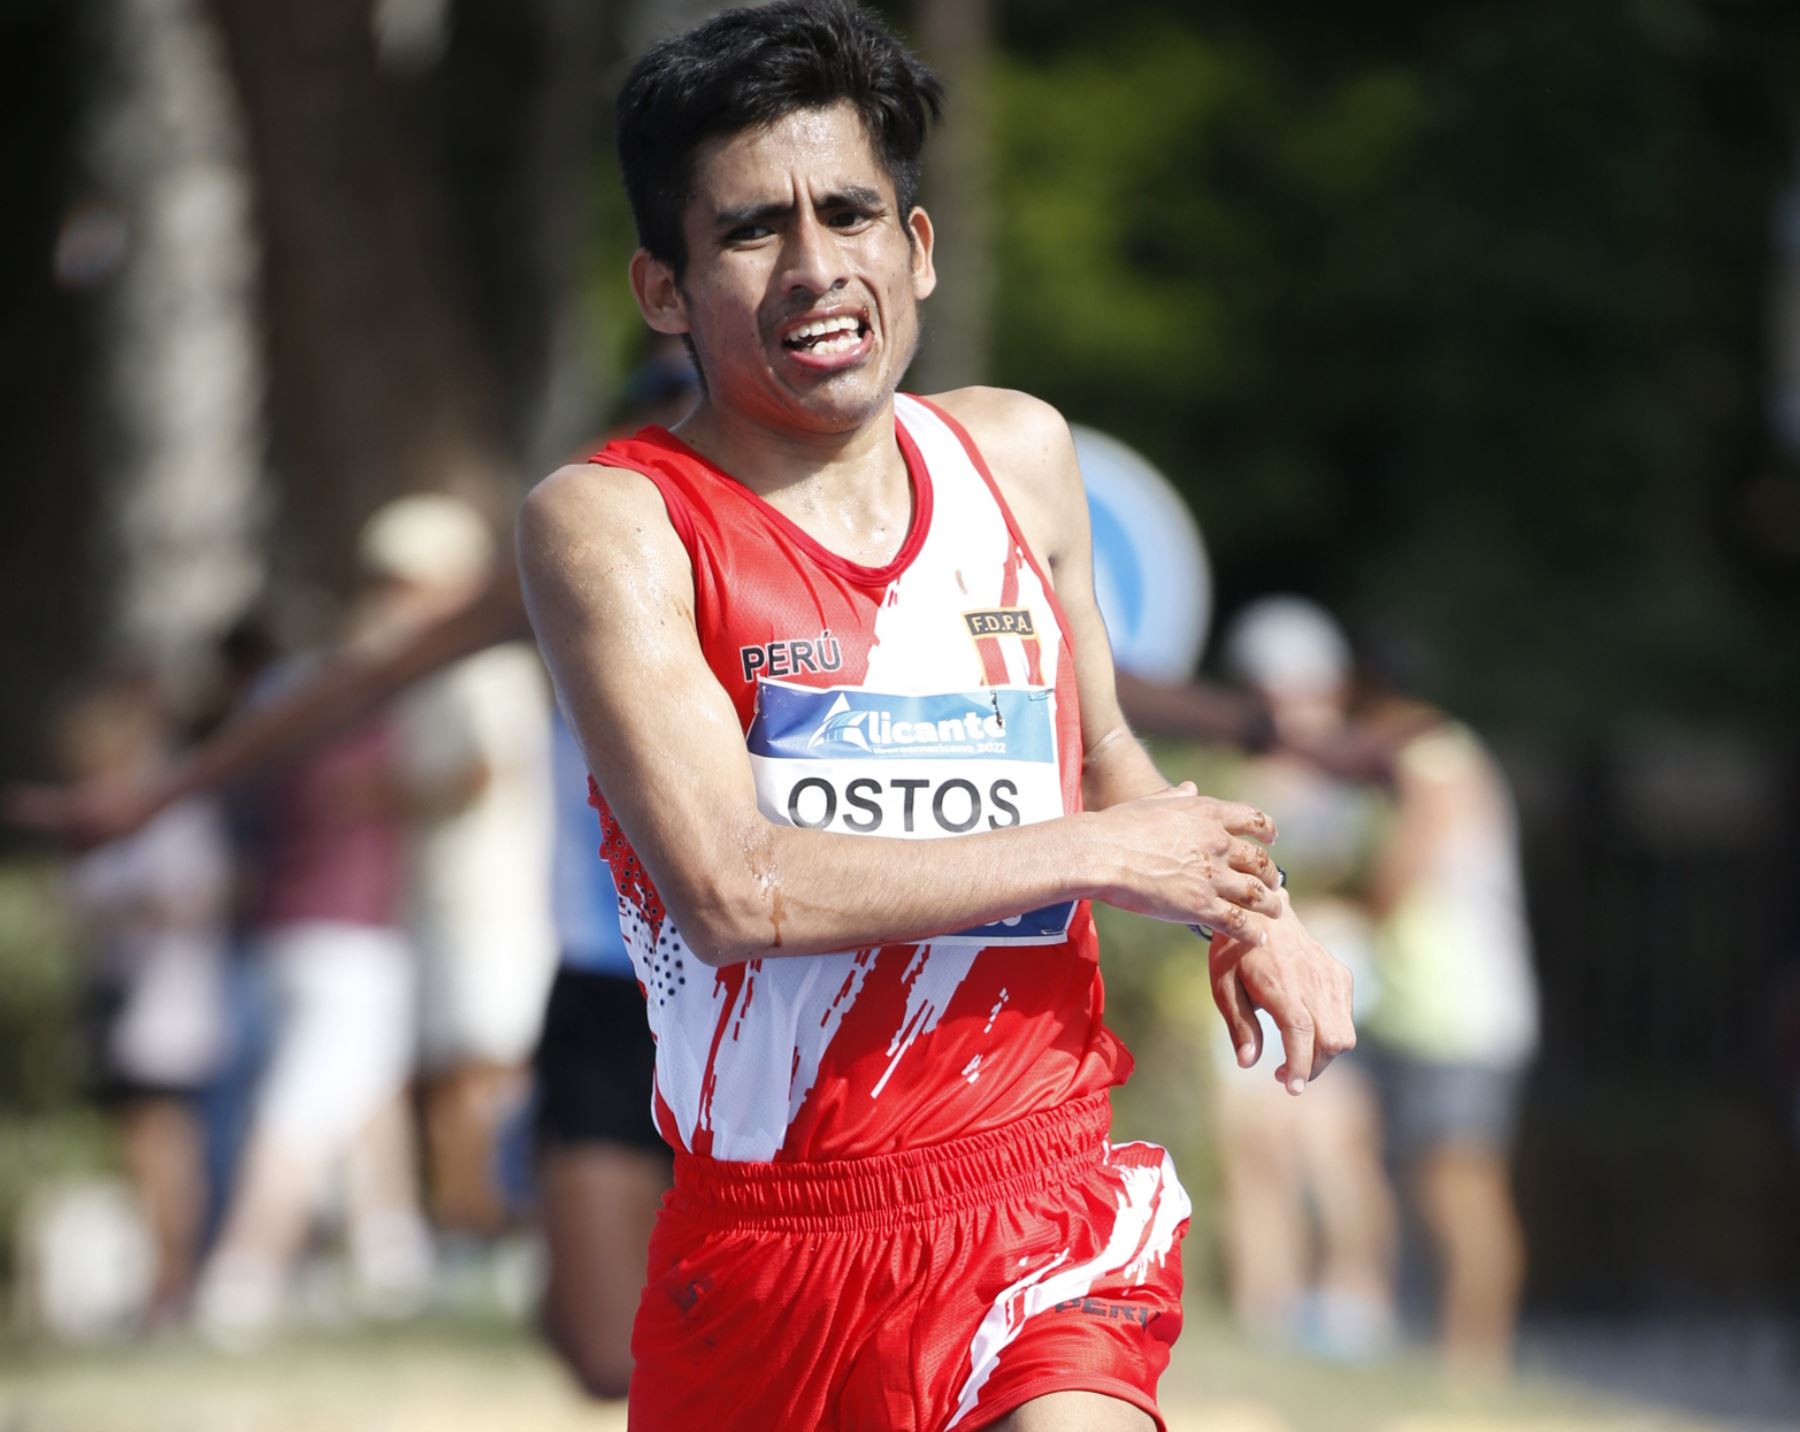 Luis Ostos fue el mejor en el medio maratón del Campeonato Iberoamericano de Atletismo 